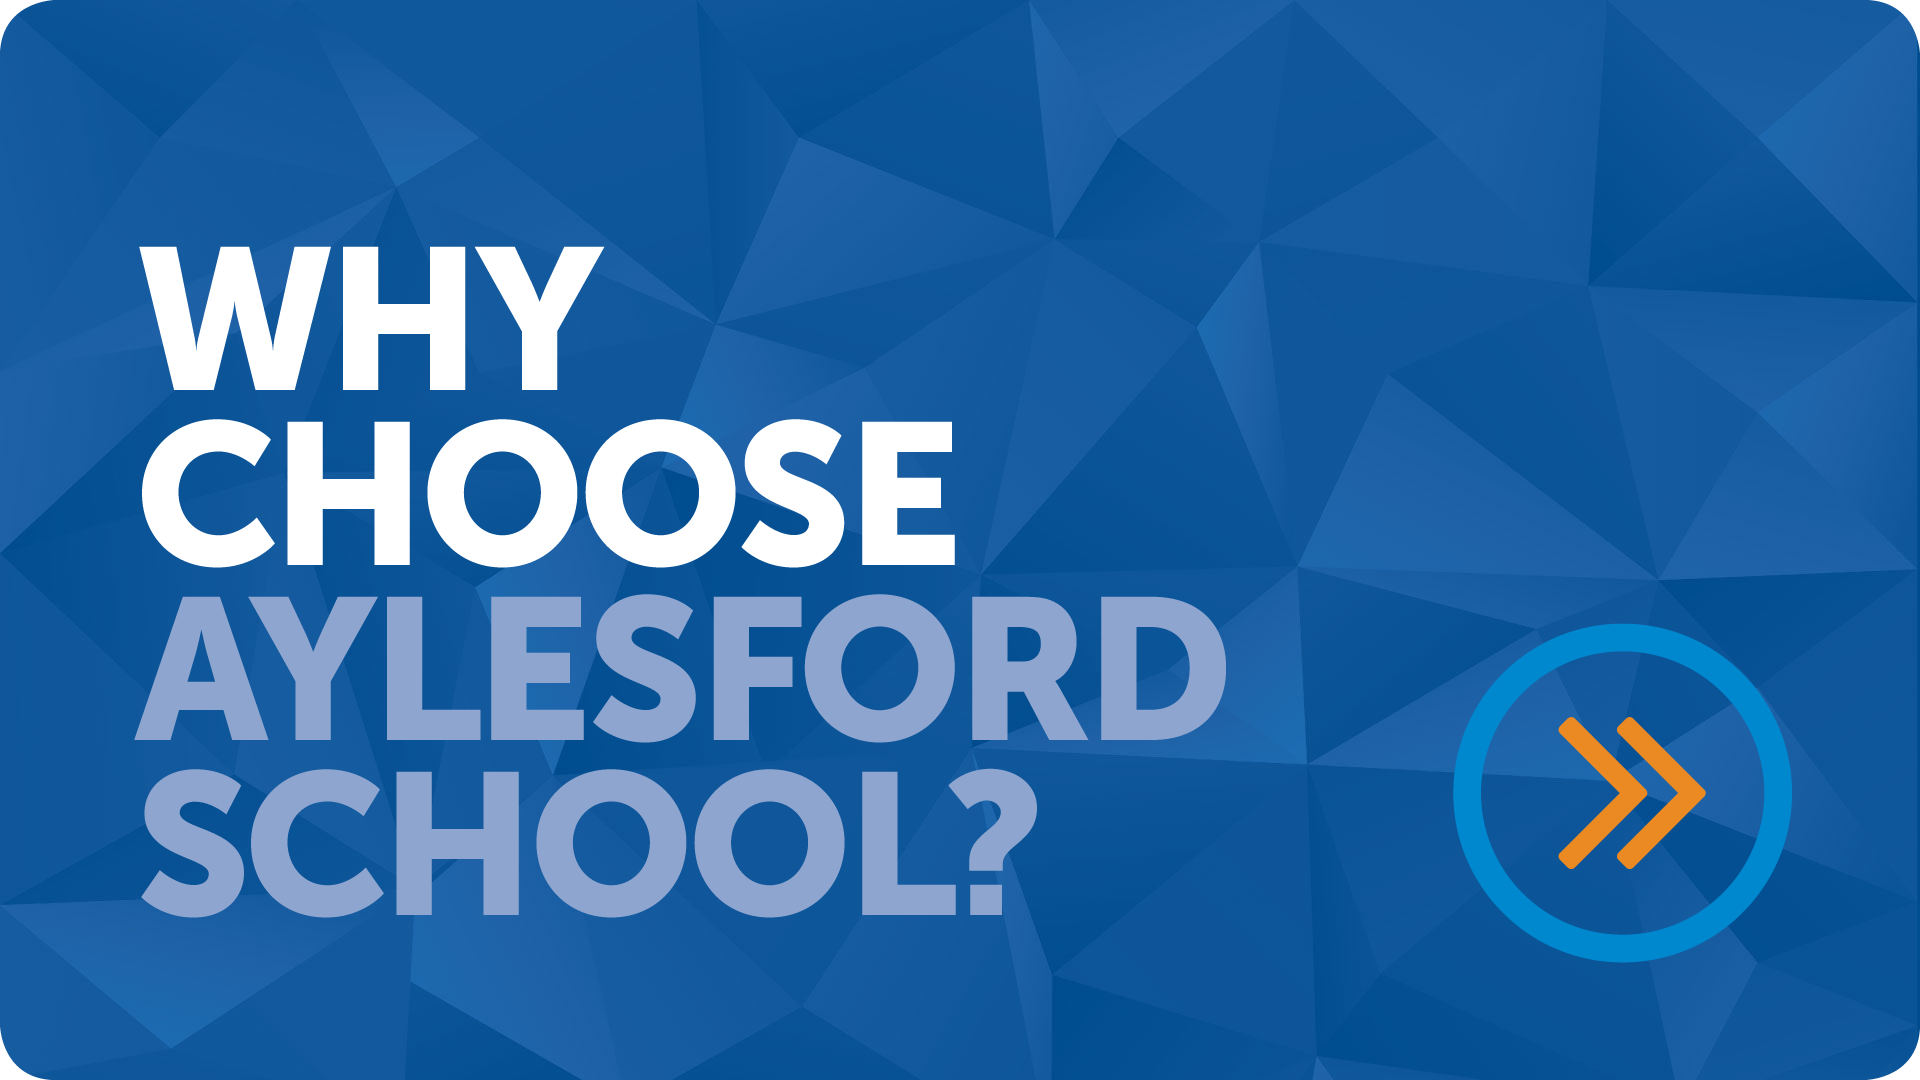 Choose Aylesford School